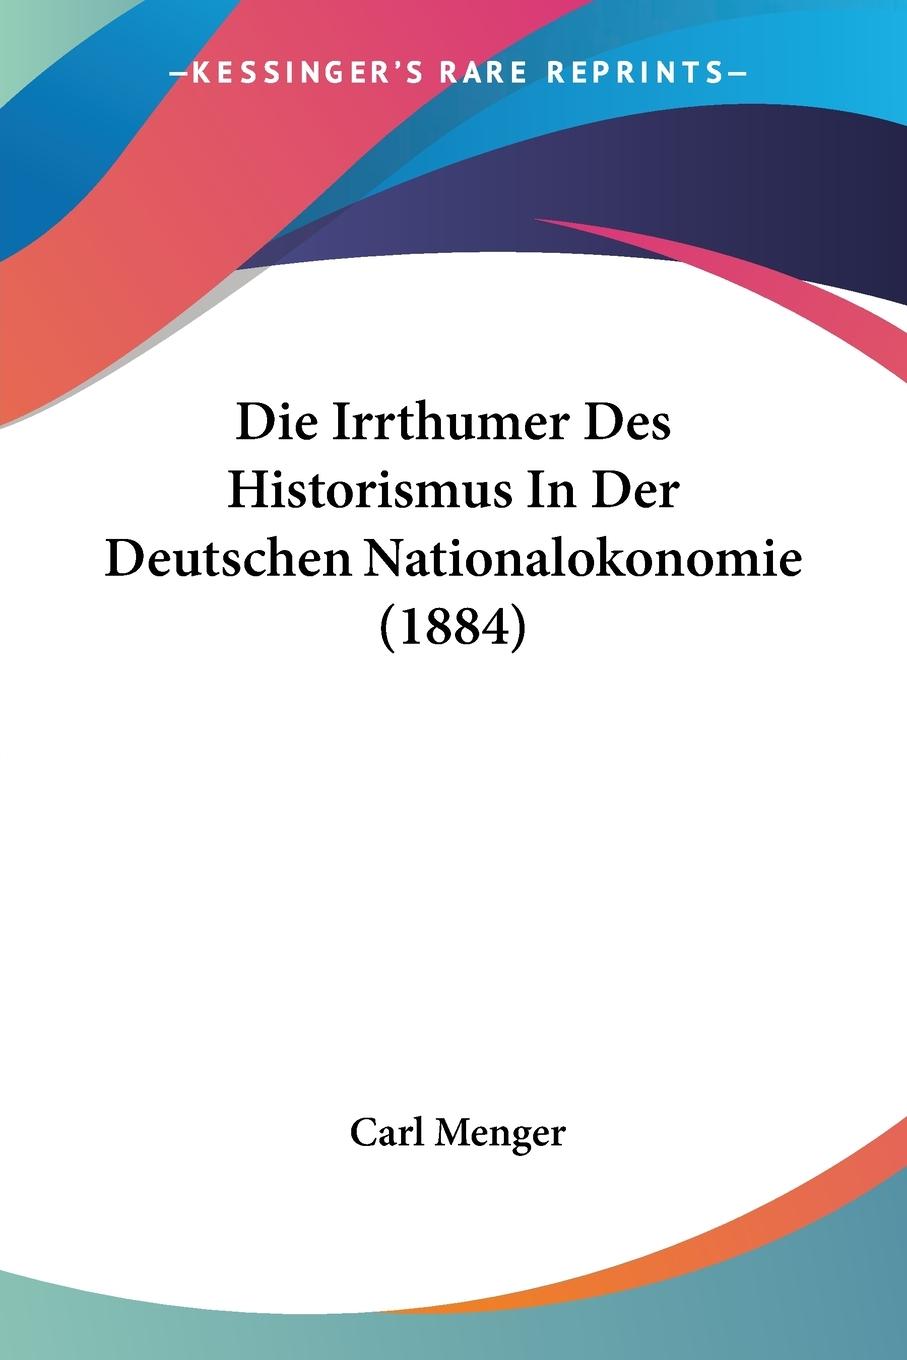 Die Irrthumer Des Historismus In Der Deutschen Nationalokonomie (1884) - Menger, Carl